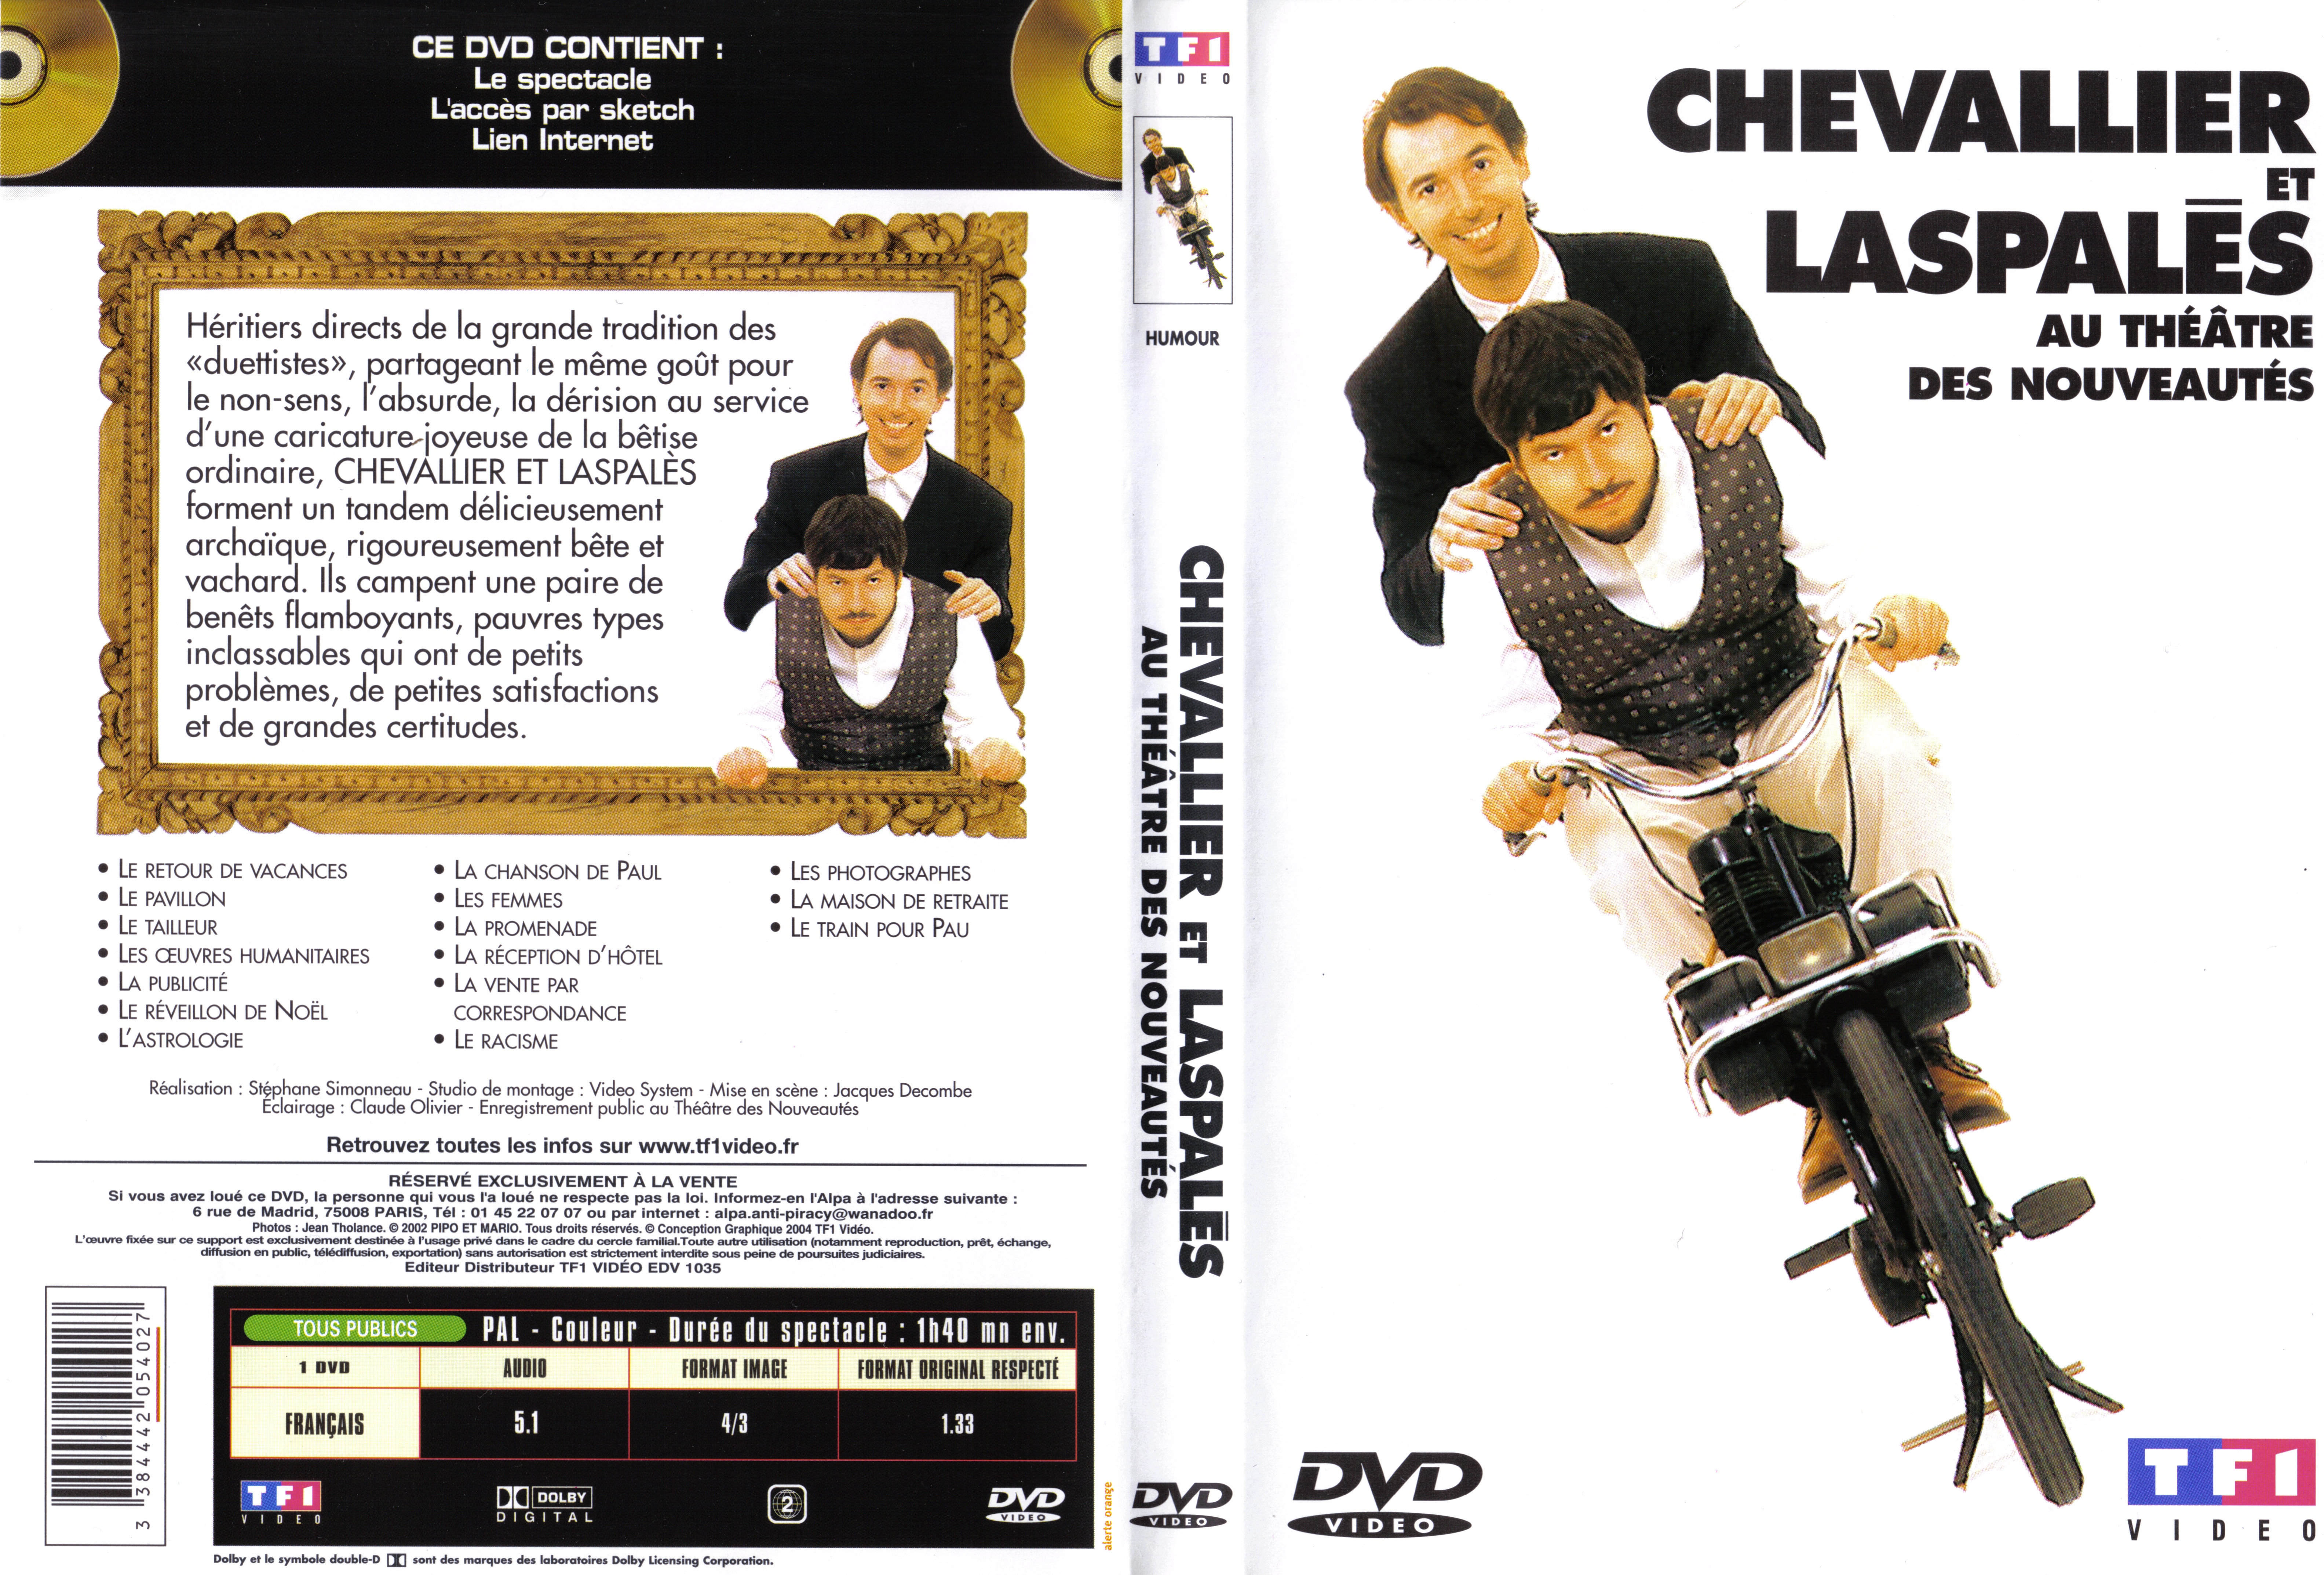 Jaquette DVD Chevalier et Laspales Au theatre des nouveautes